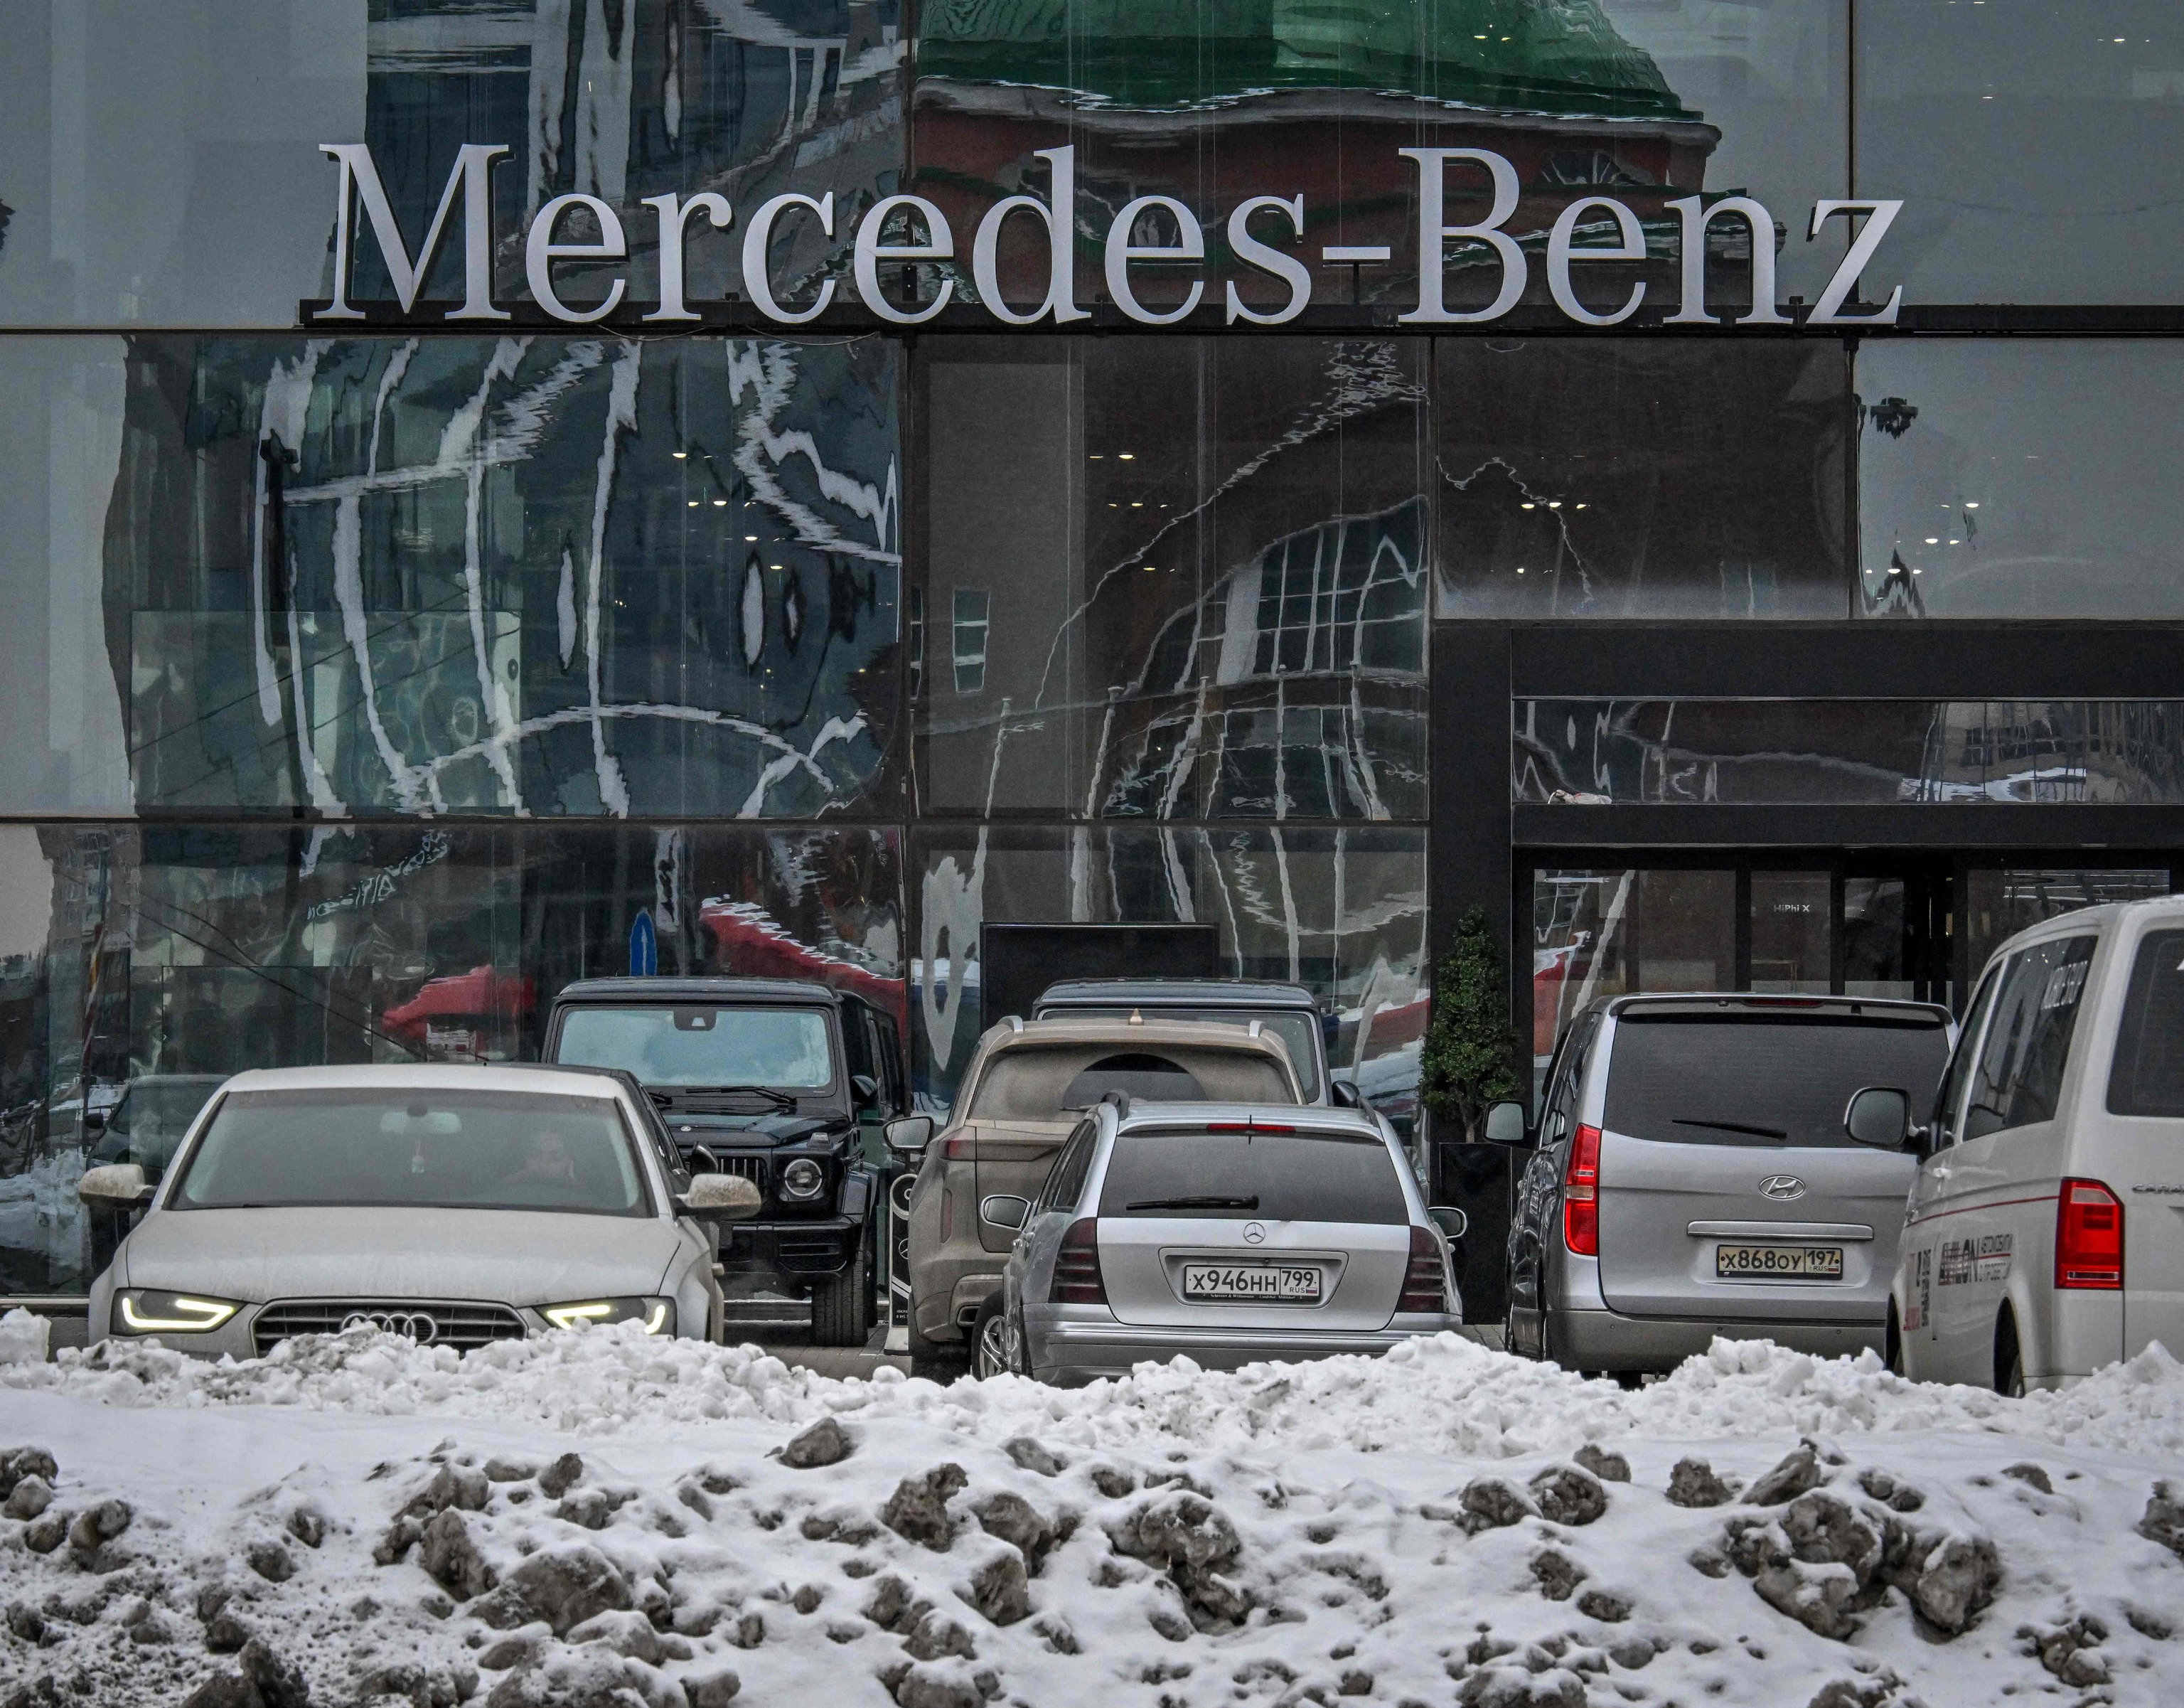 Concesionario del fabricante alemán de automóviles Mercedes-Benz en Moscú.